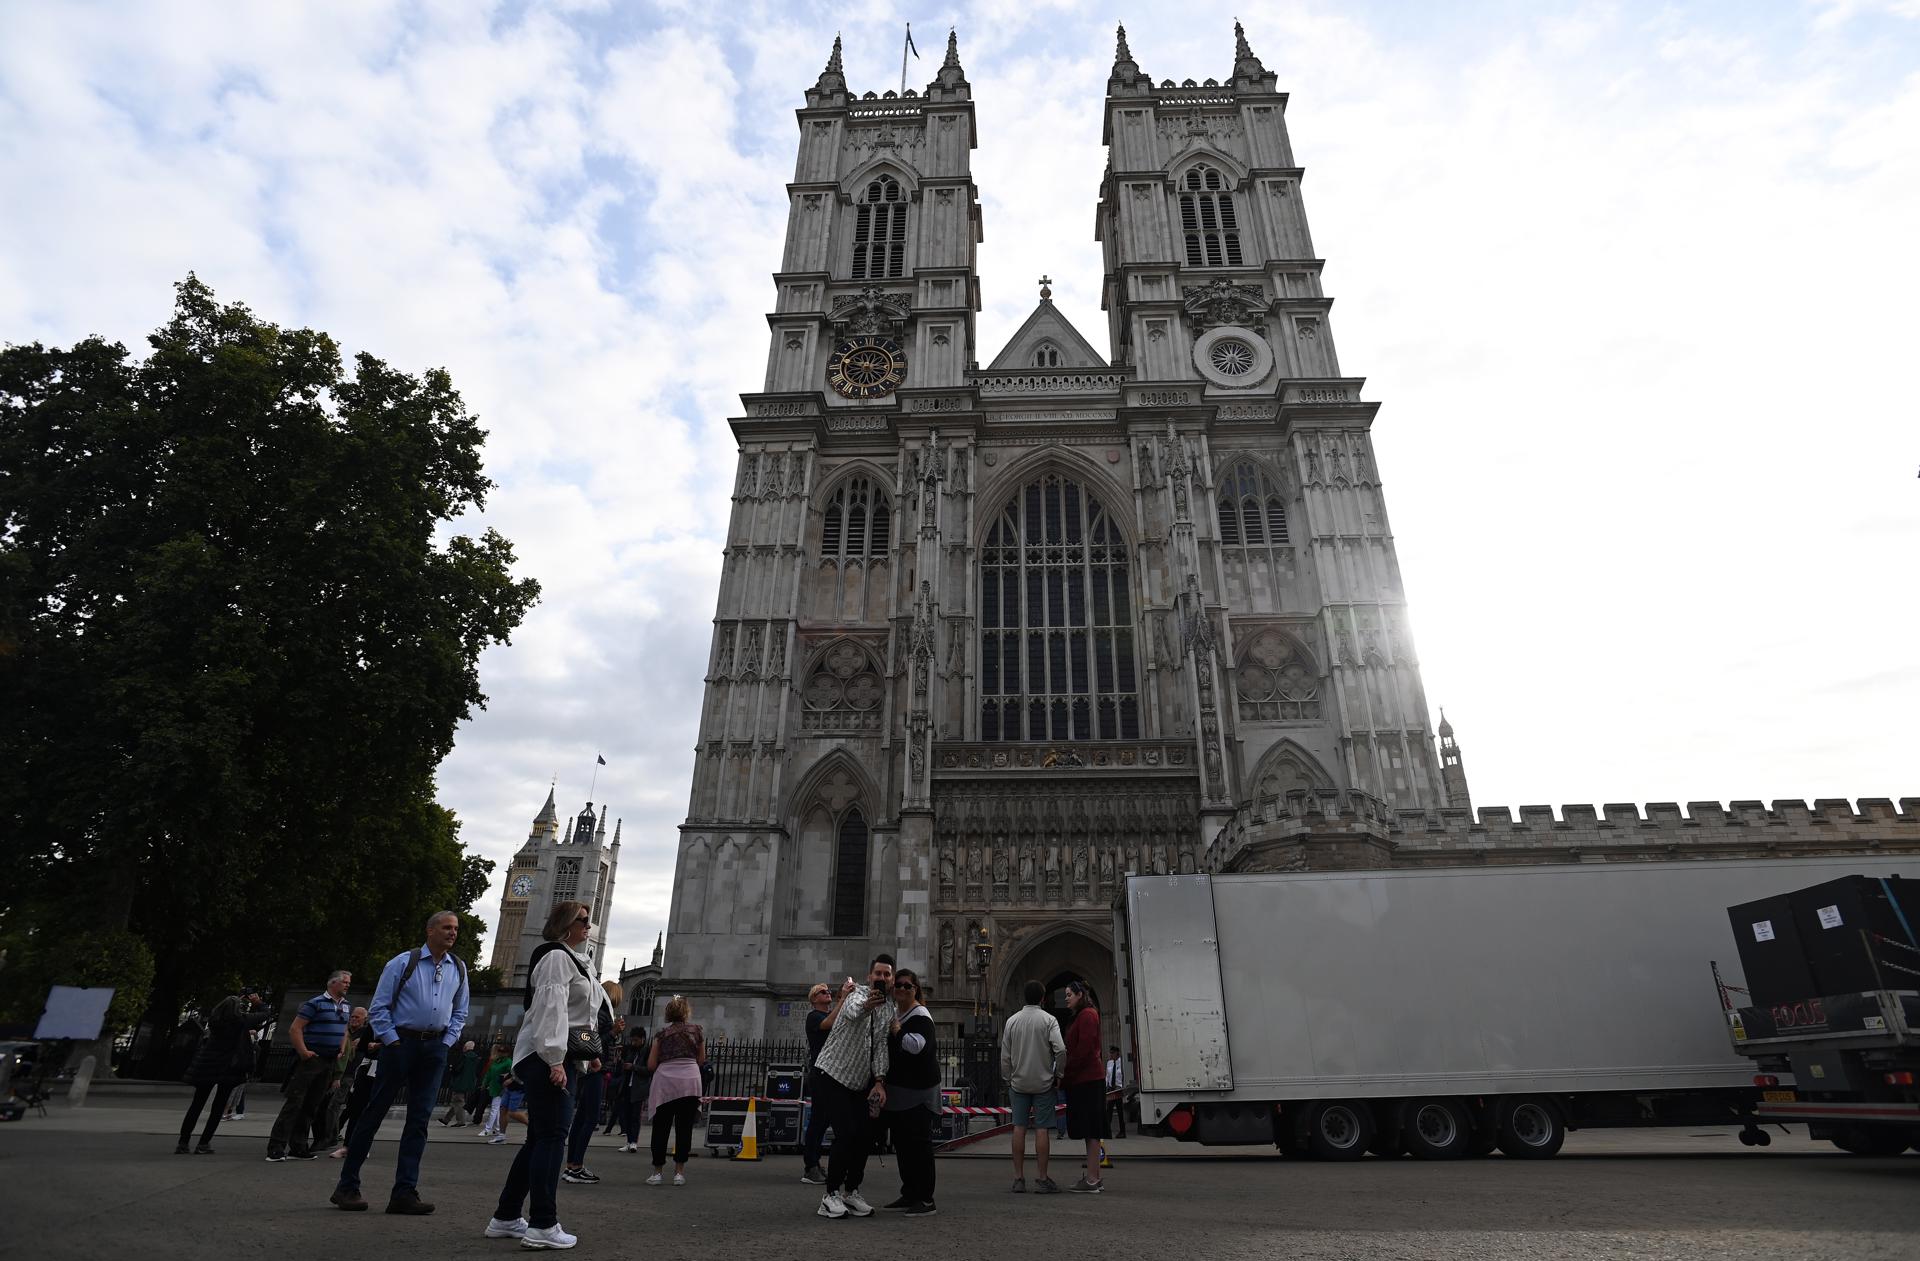 La abadía de Westminster abrirá a turistas descalzos el mosaico de la Coronación